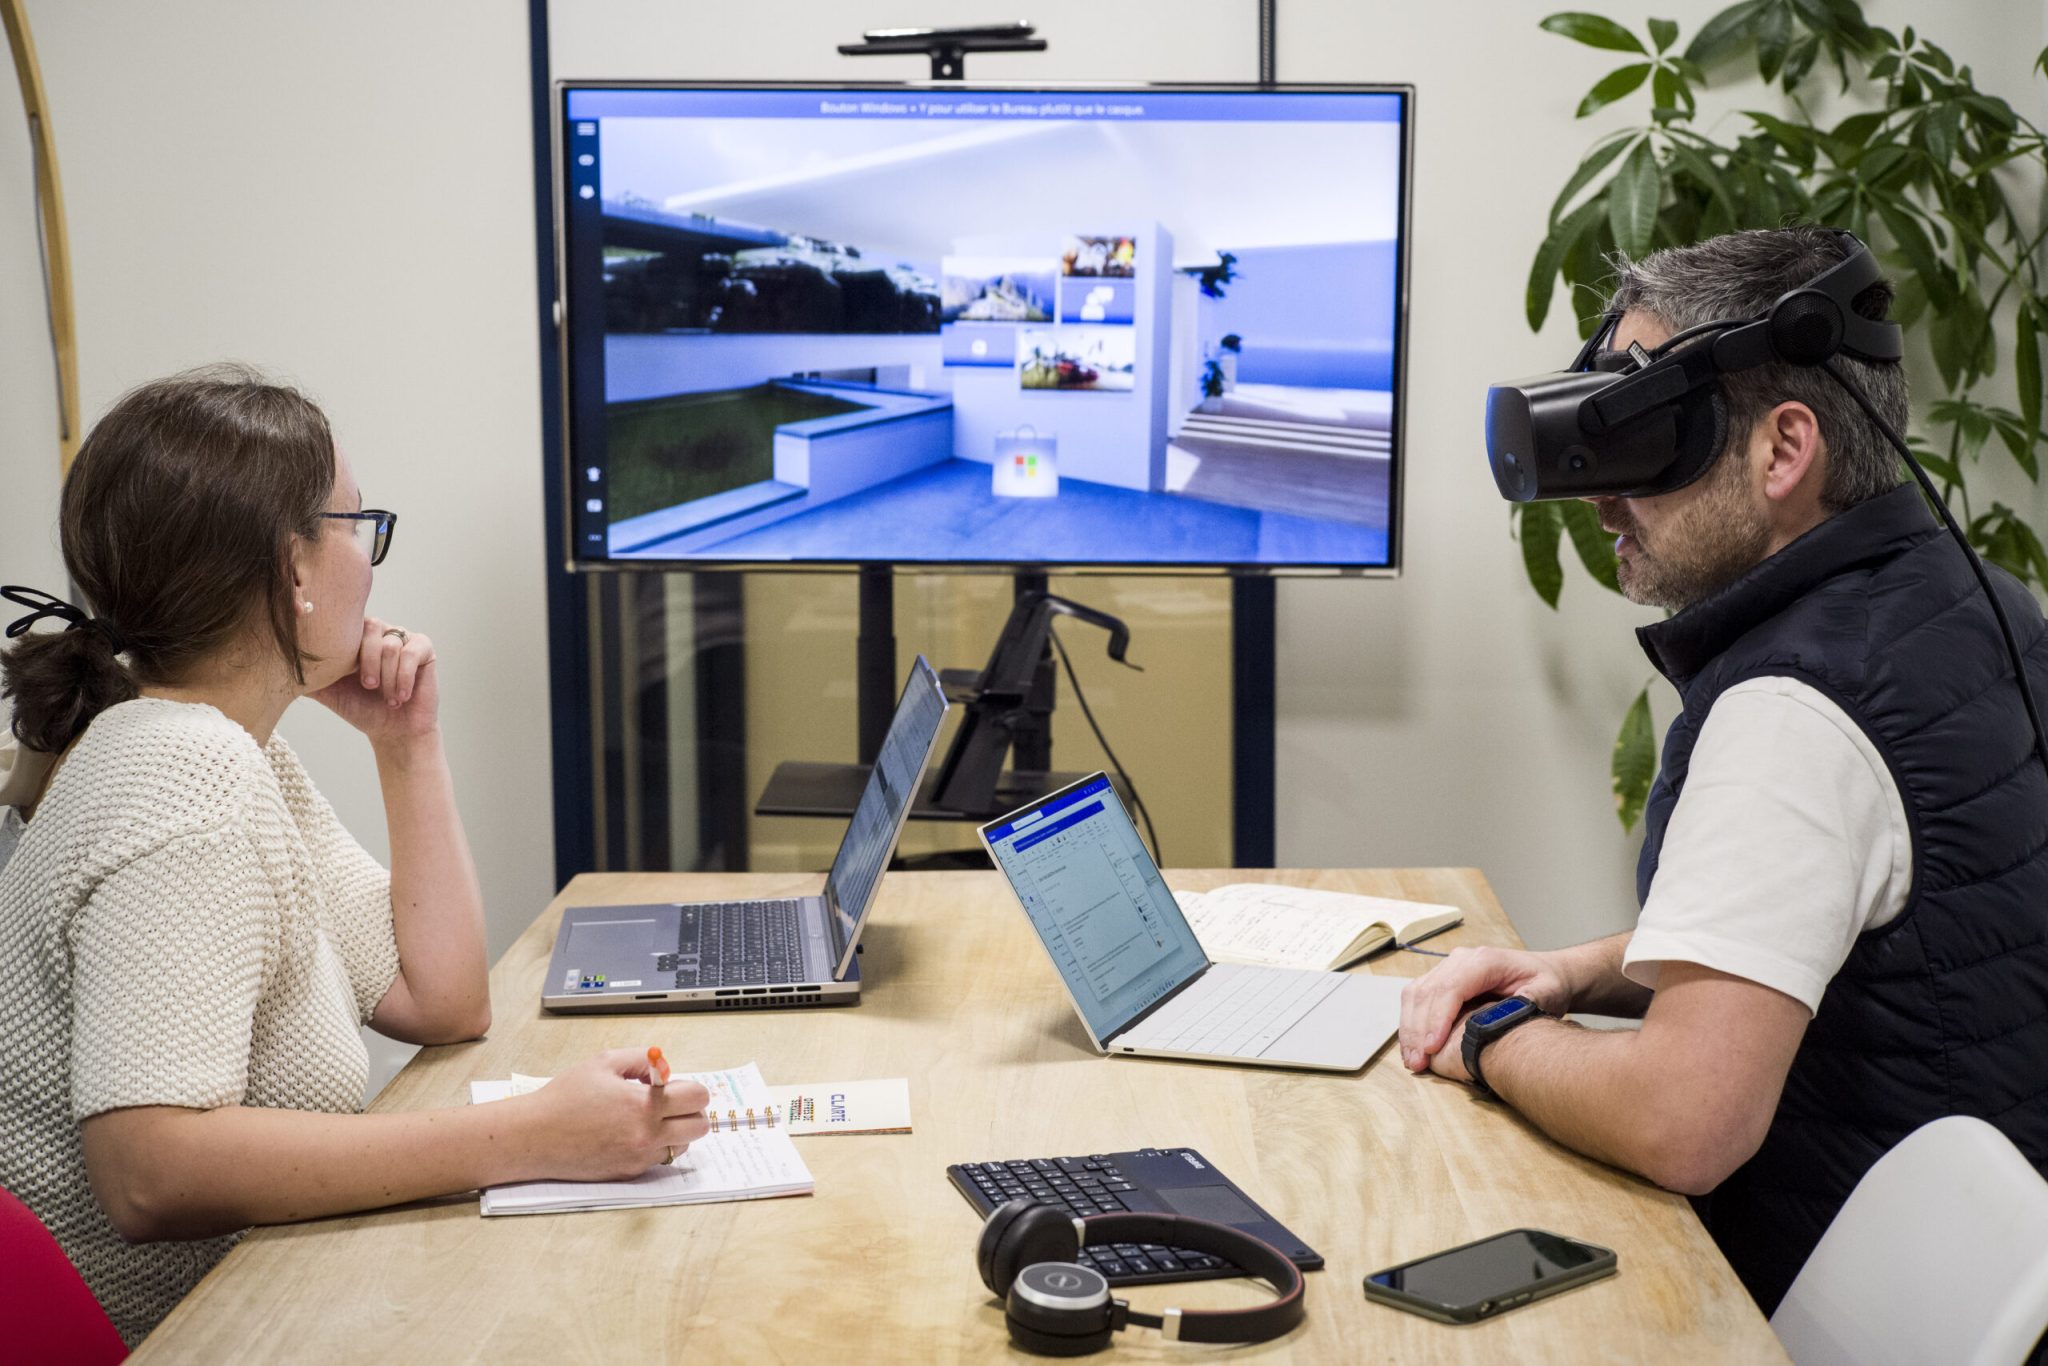 Deux personnes en réunion, une personne avec un casque de réalité virtuelle, et l'autre personne regardant ce que la personne voit dans le casque à l'aide d'une télévision